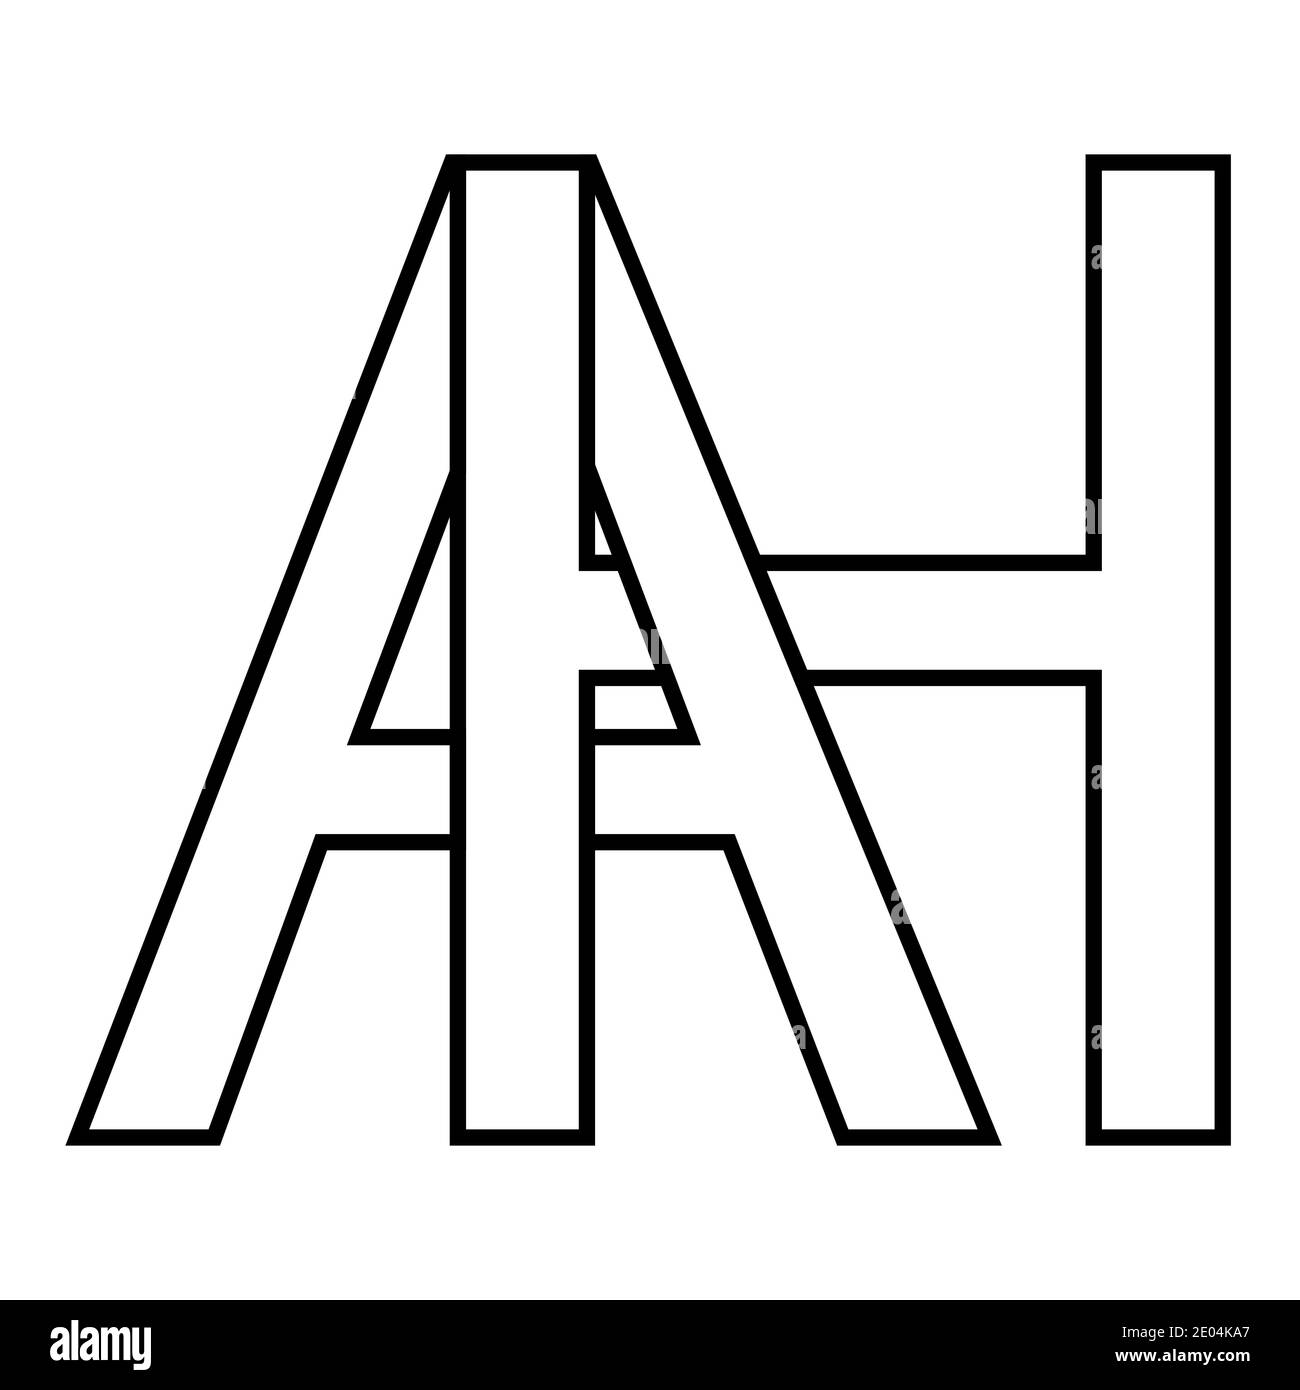 Logo Zeichen ah Symbol Zeichen zwei Zeilensprungbuchstaben A, H Vektor Logo ah erste Großbuchstaben Muster Alphabet a, h Stock Vektor